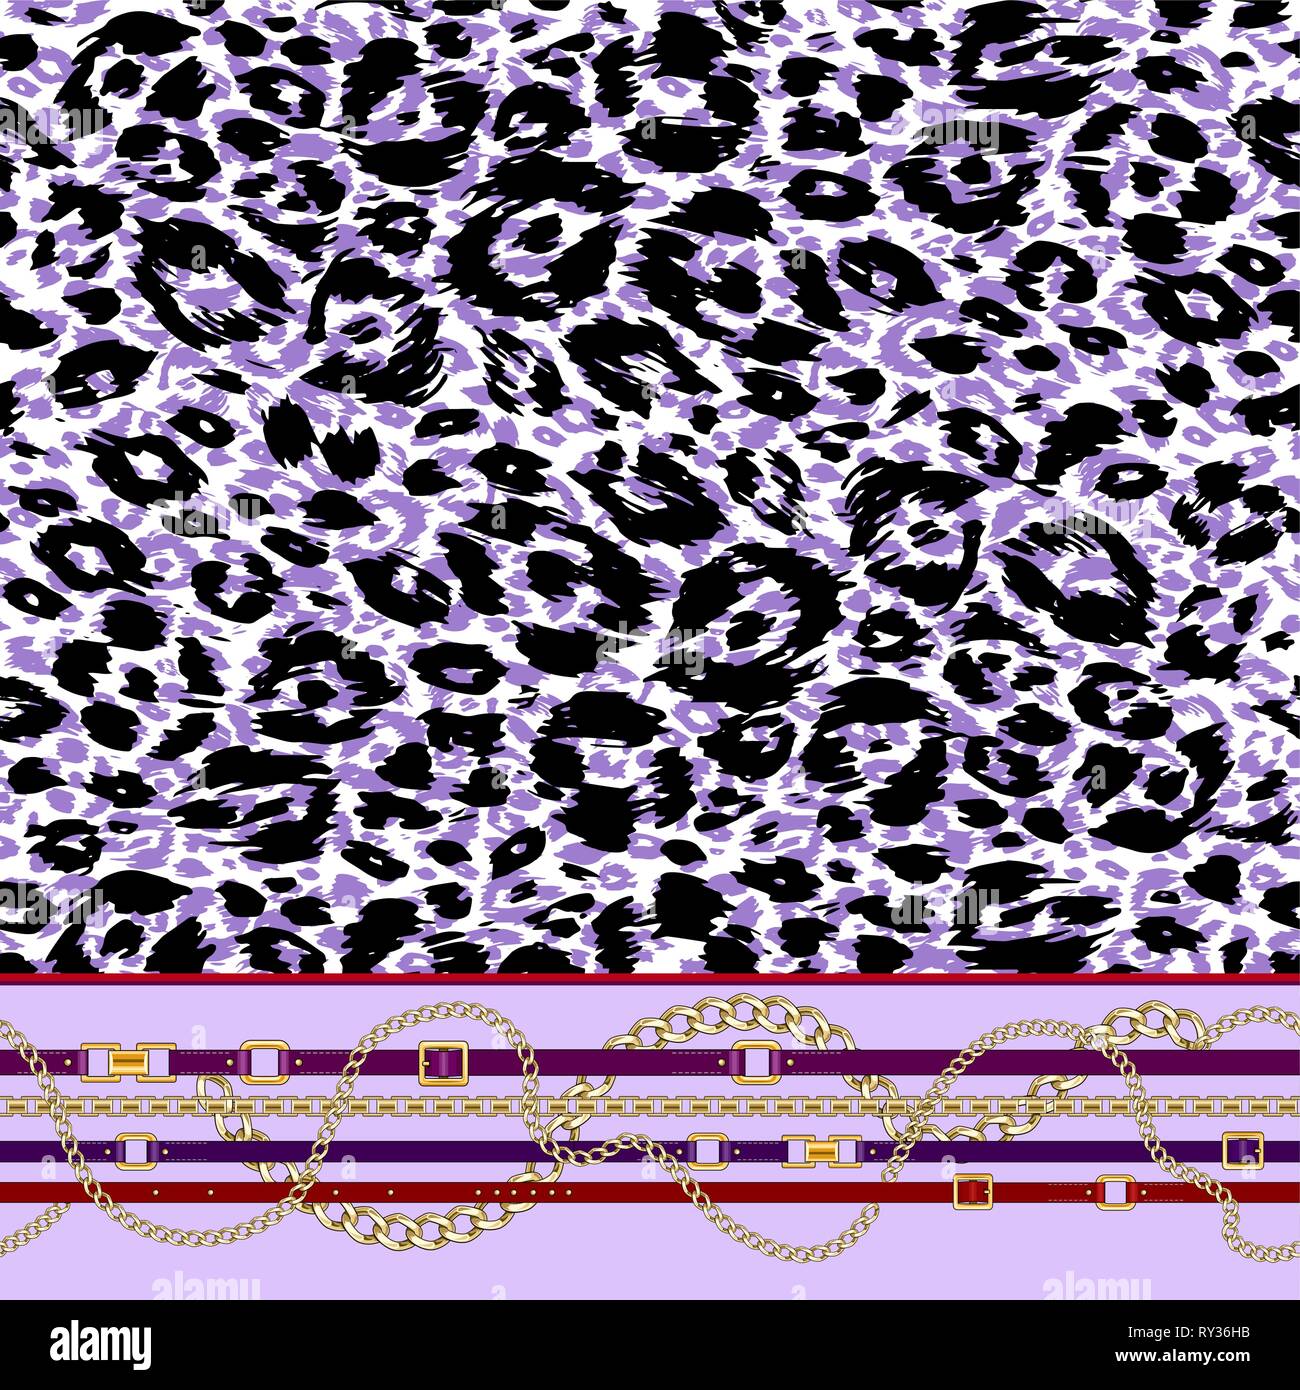 Abctract Muster mit Riemen, Kette auf Violett tierischer Haut Hintergrund für Stoff. Trendy wiederholen Leopardenmuster. Stock Vektor